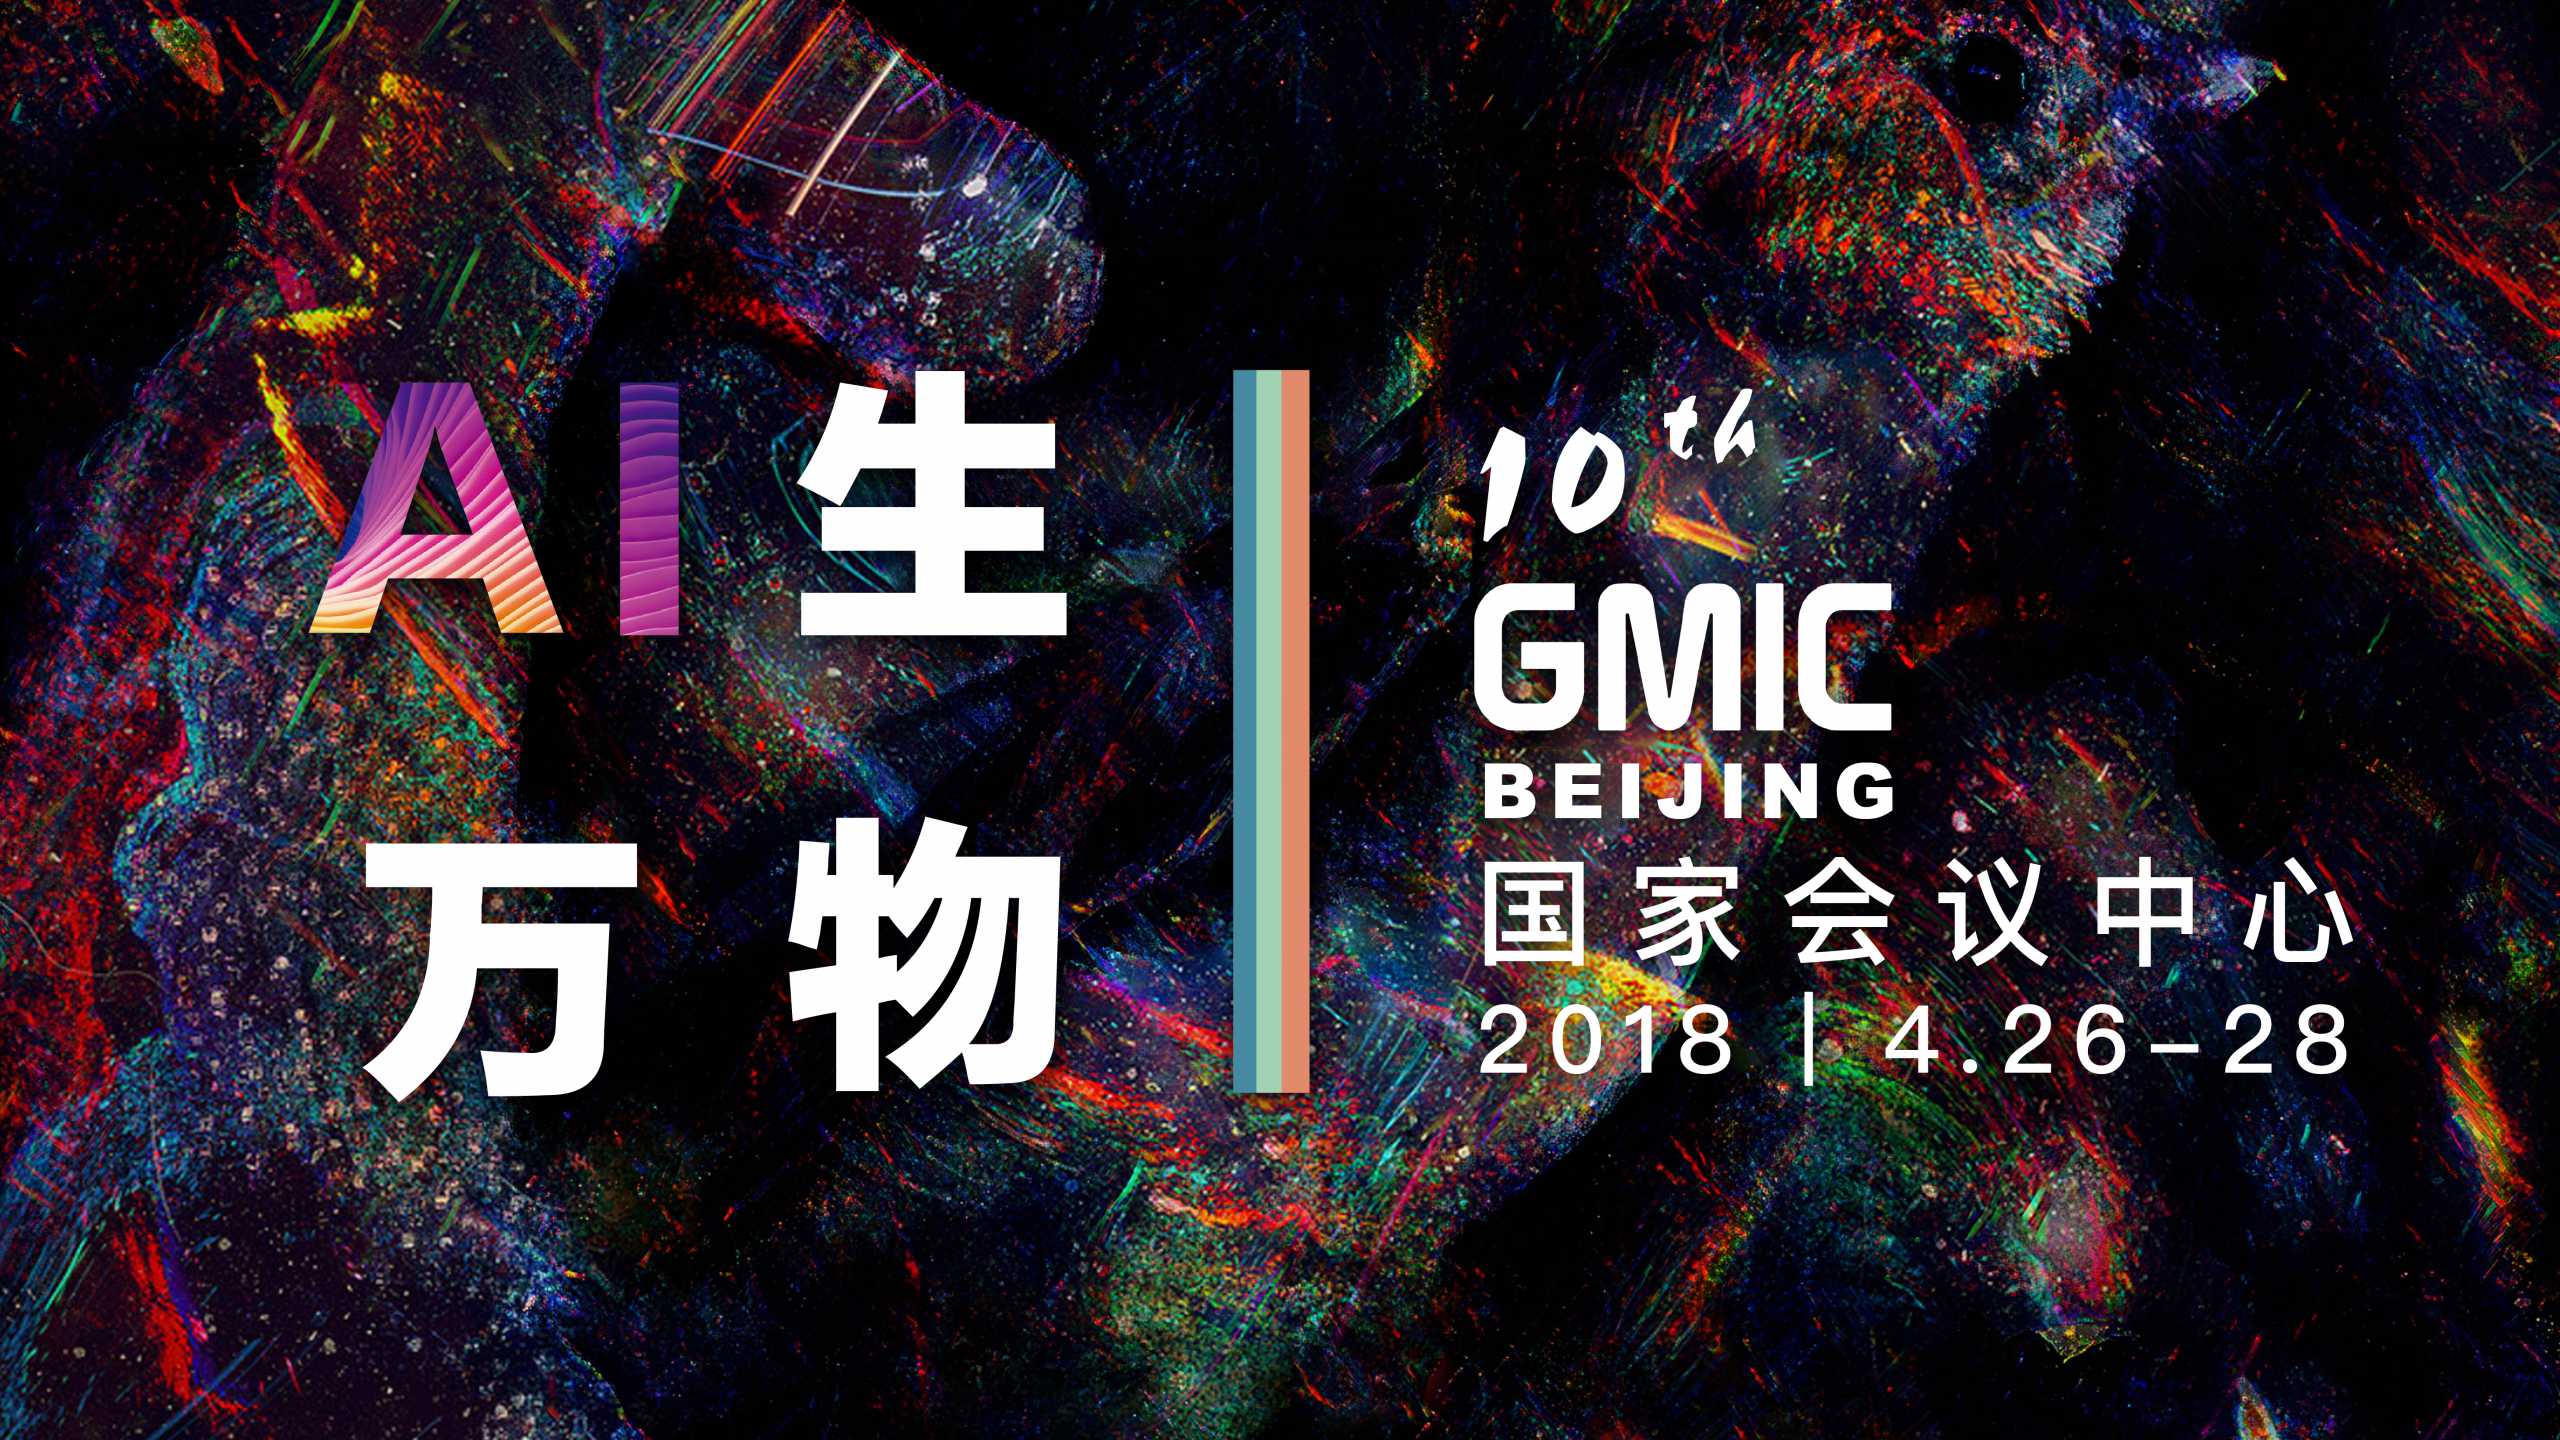 知因智慧出席GMIC-2018，首倡金融科技的核心使命